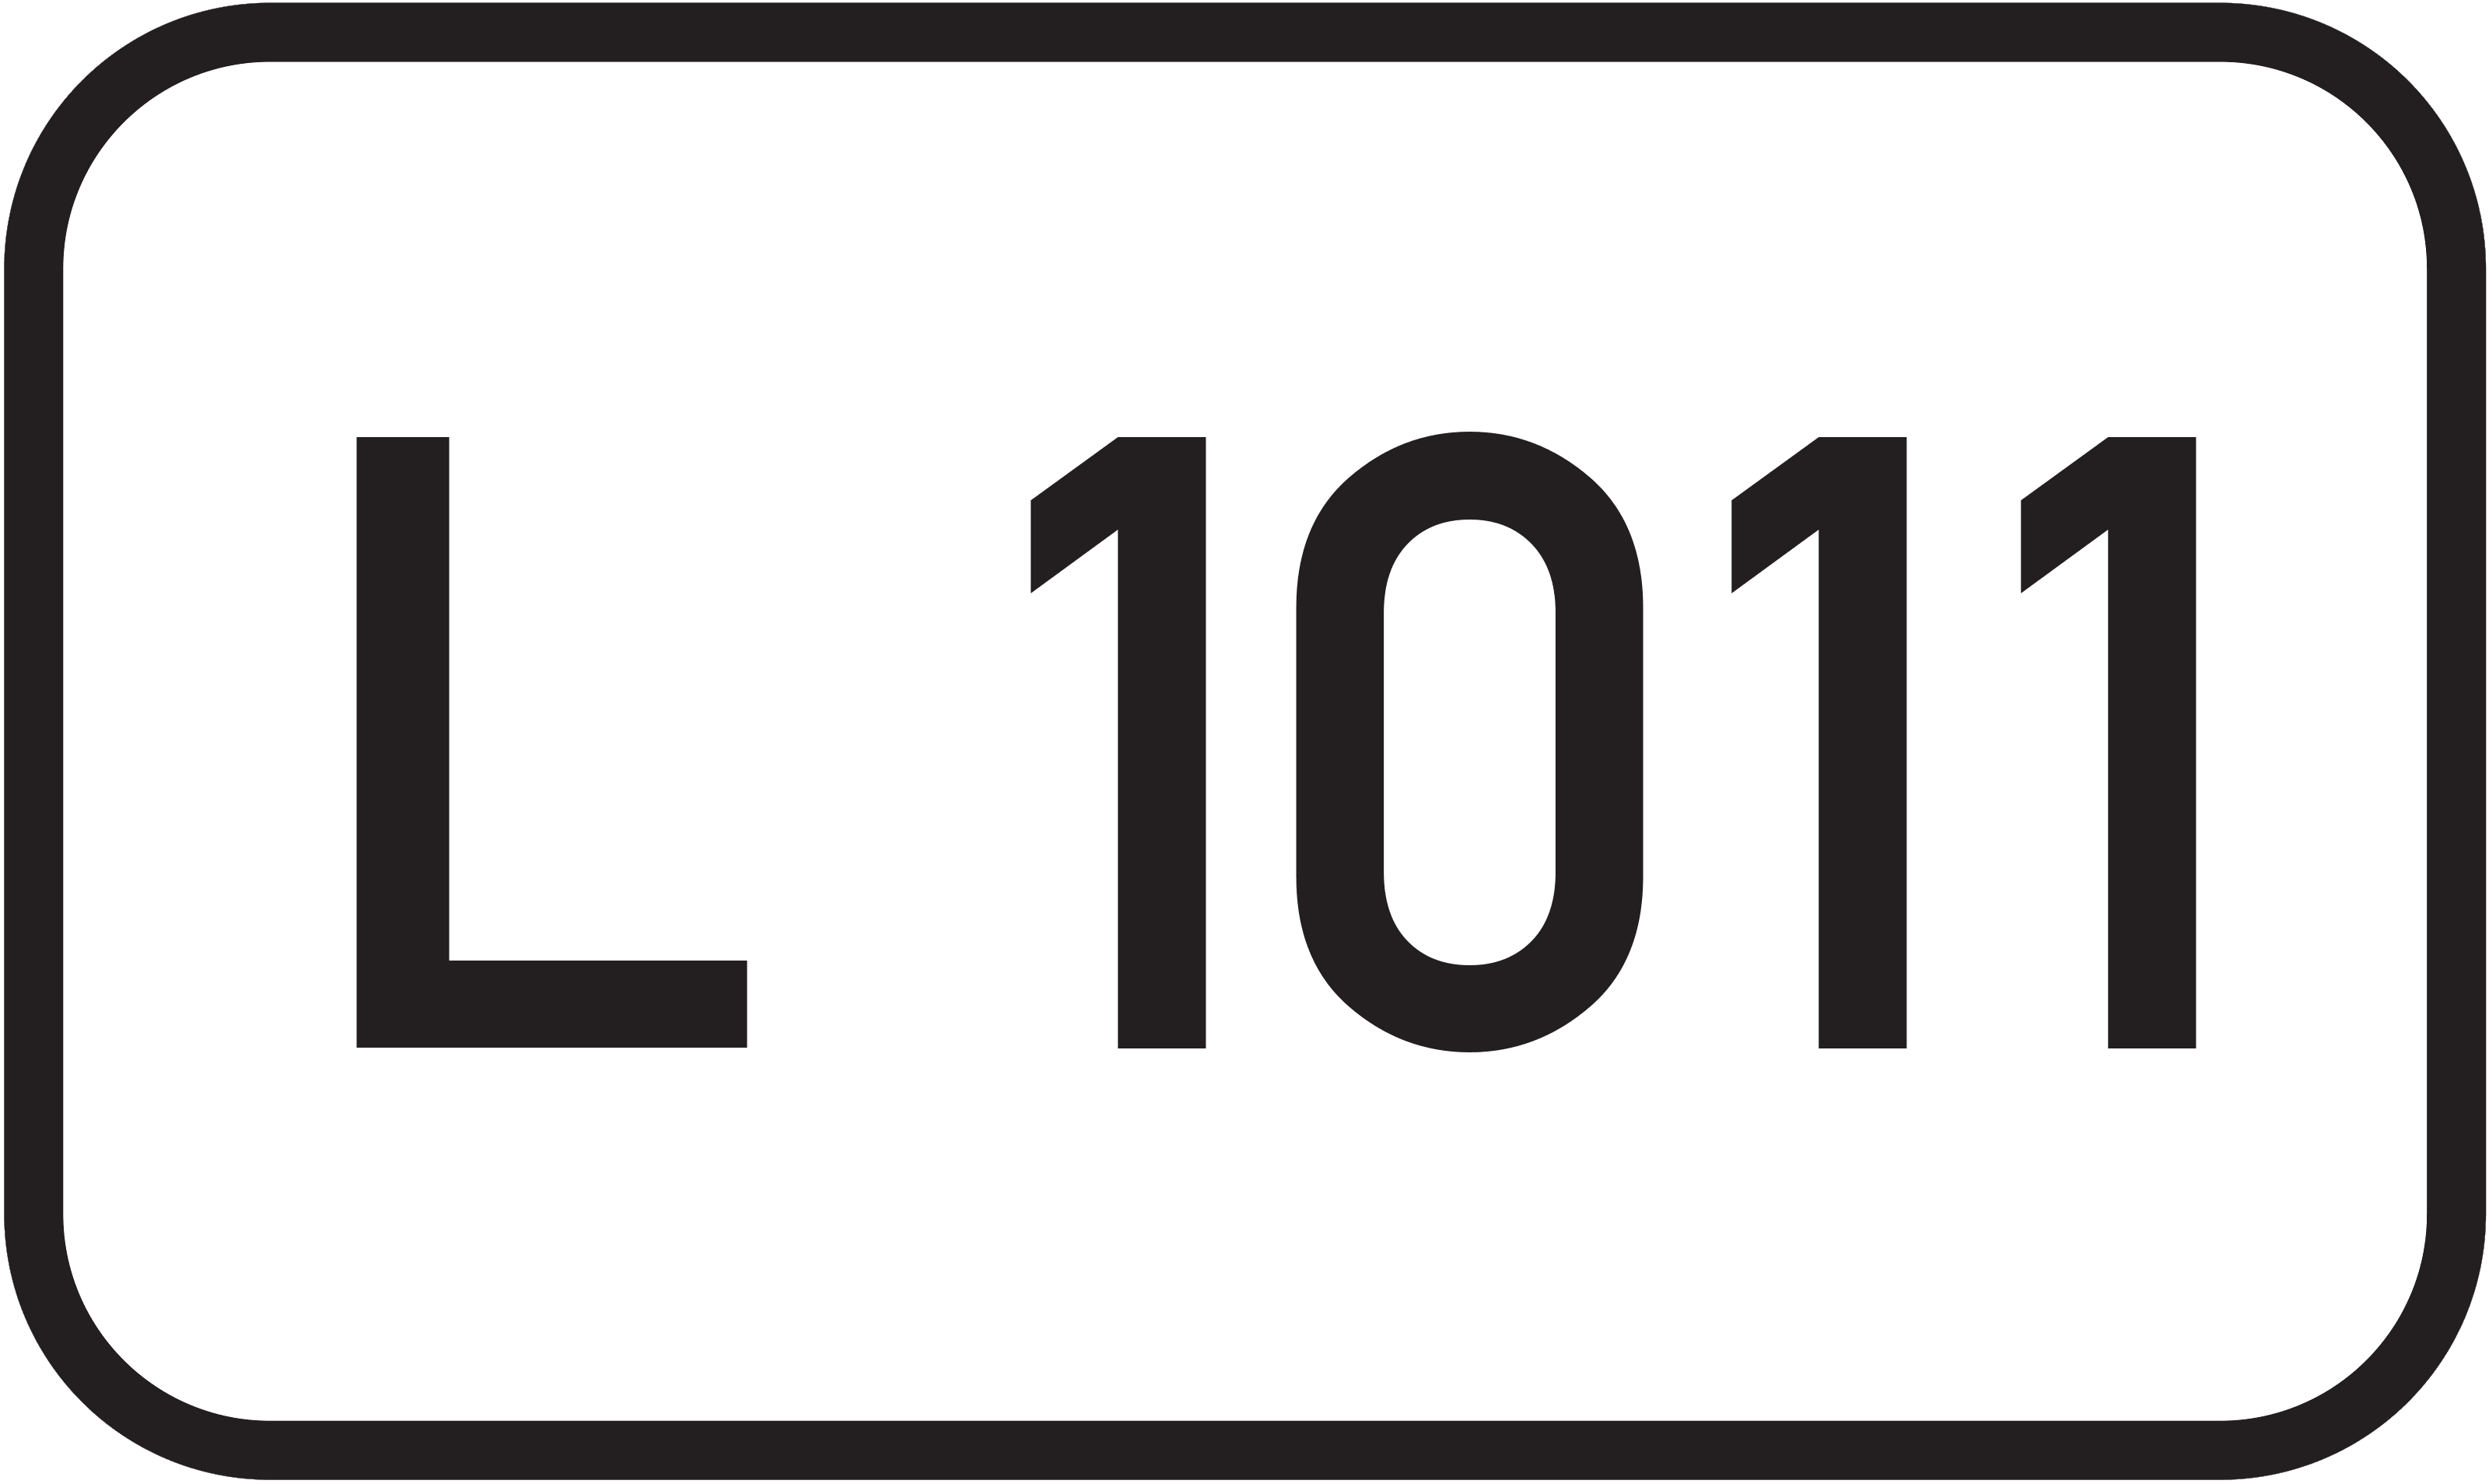 Landesstraße L 1011